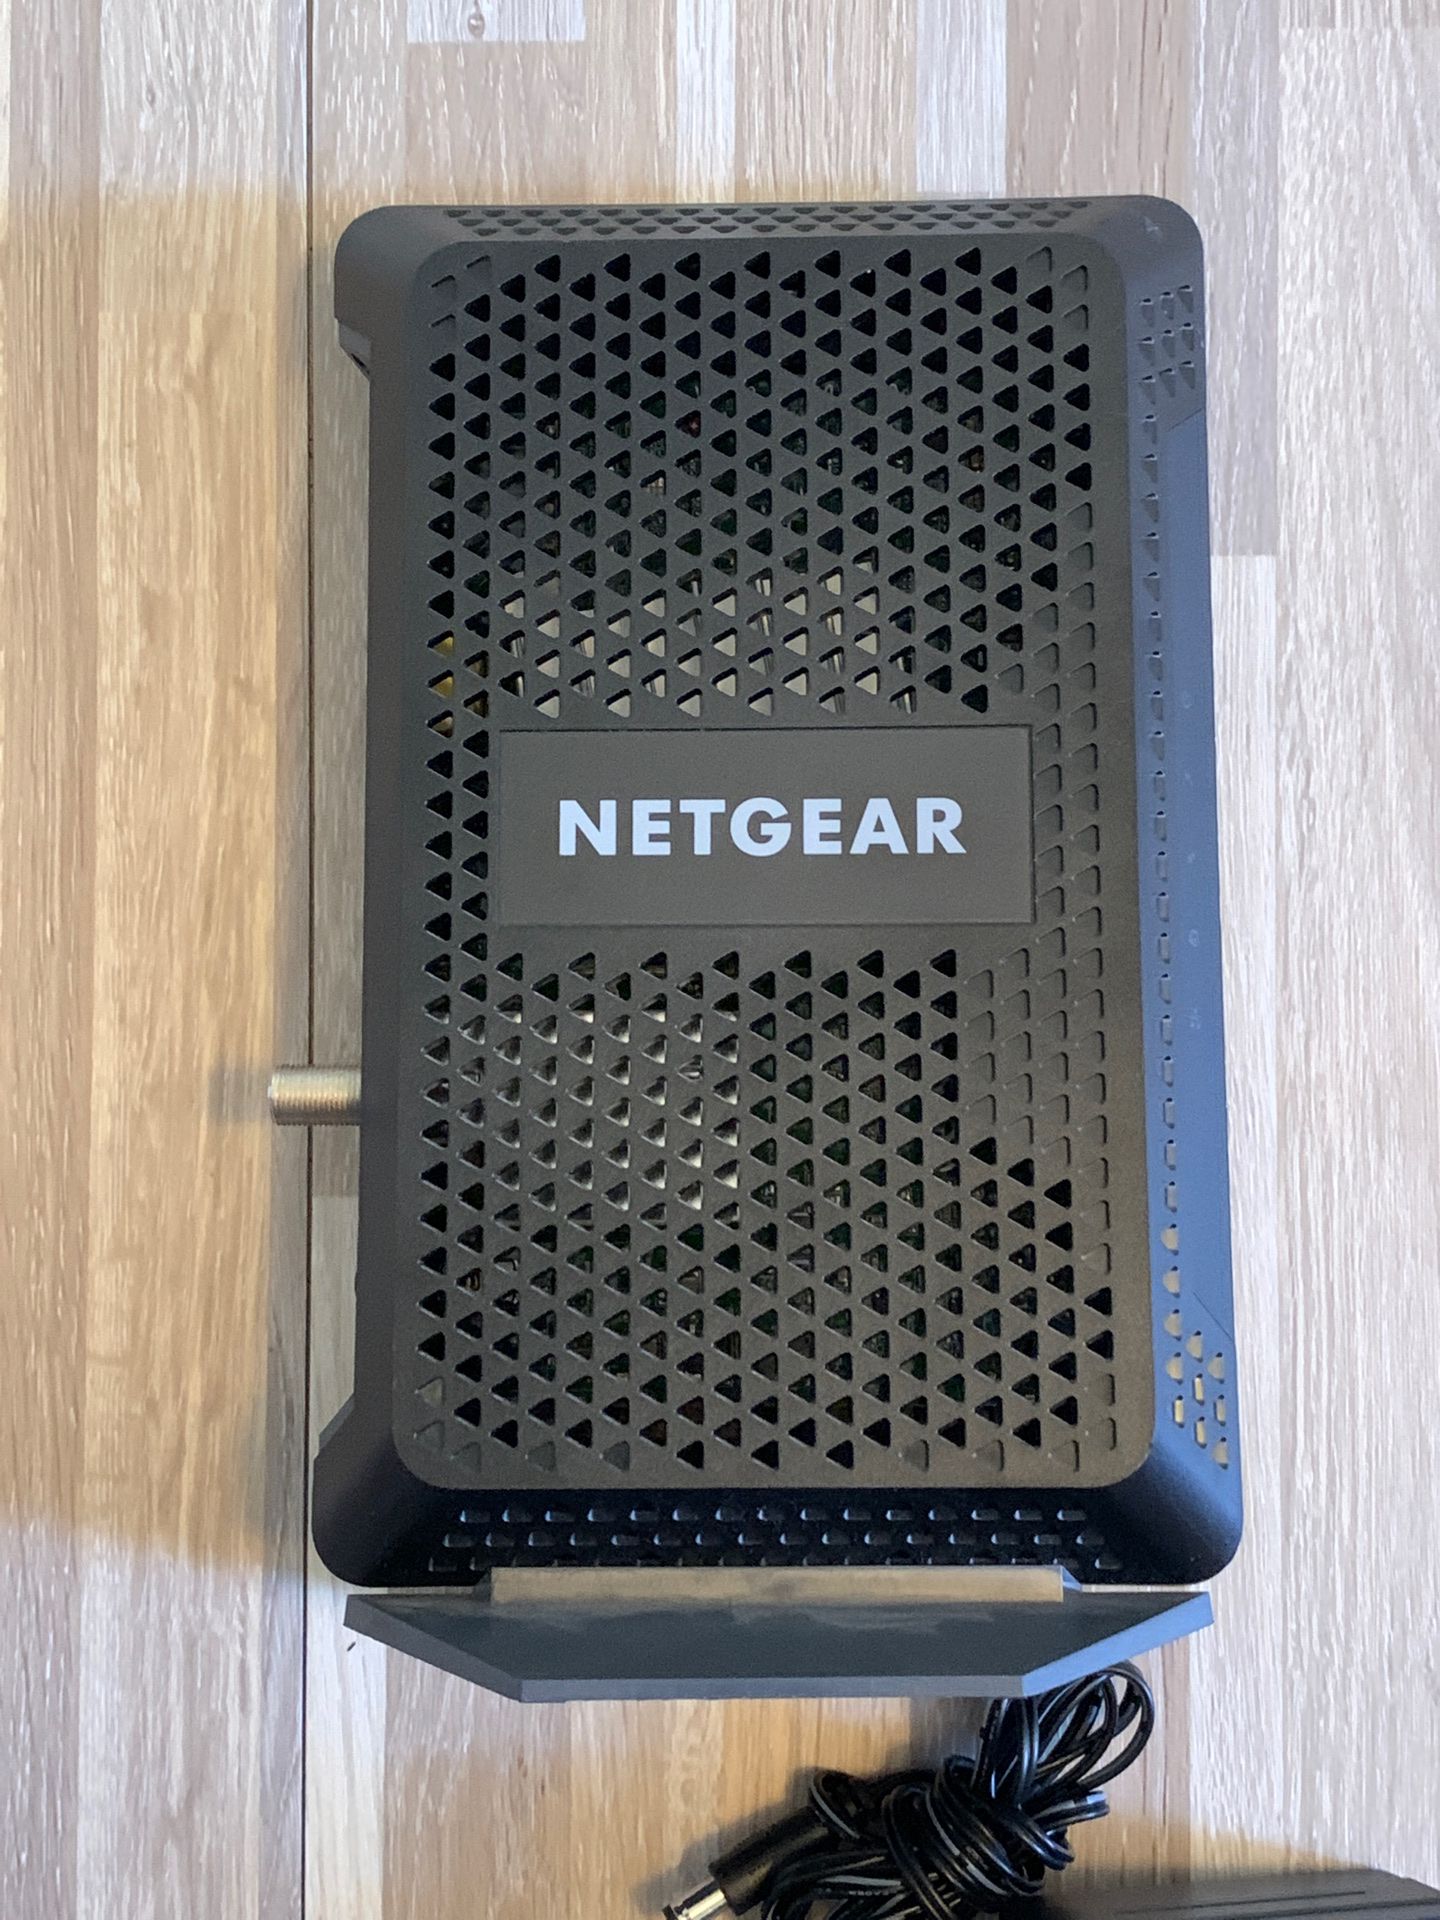 NETGEAR cable modem - CM600